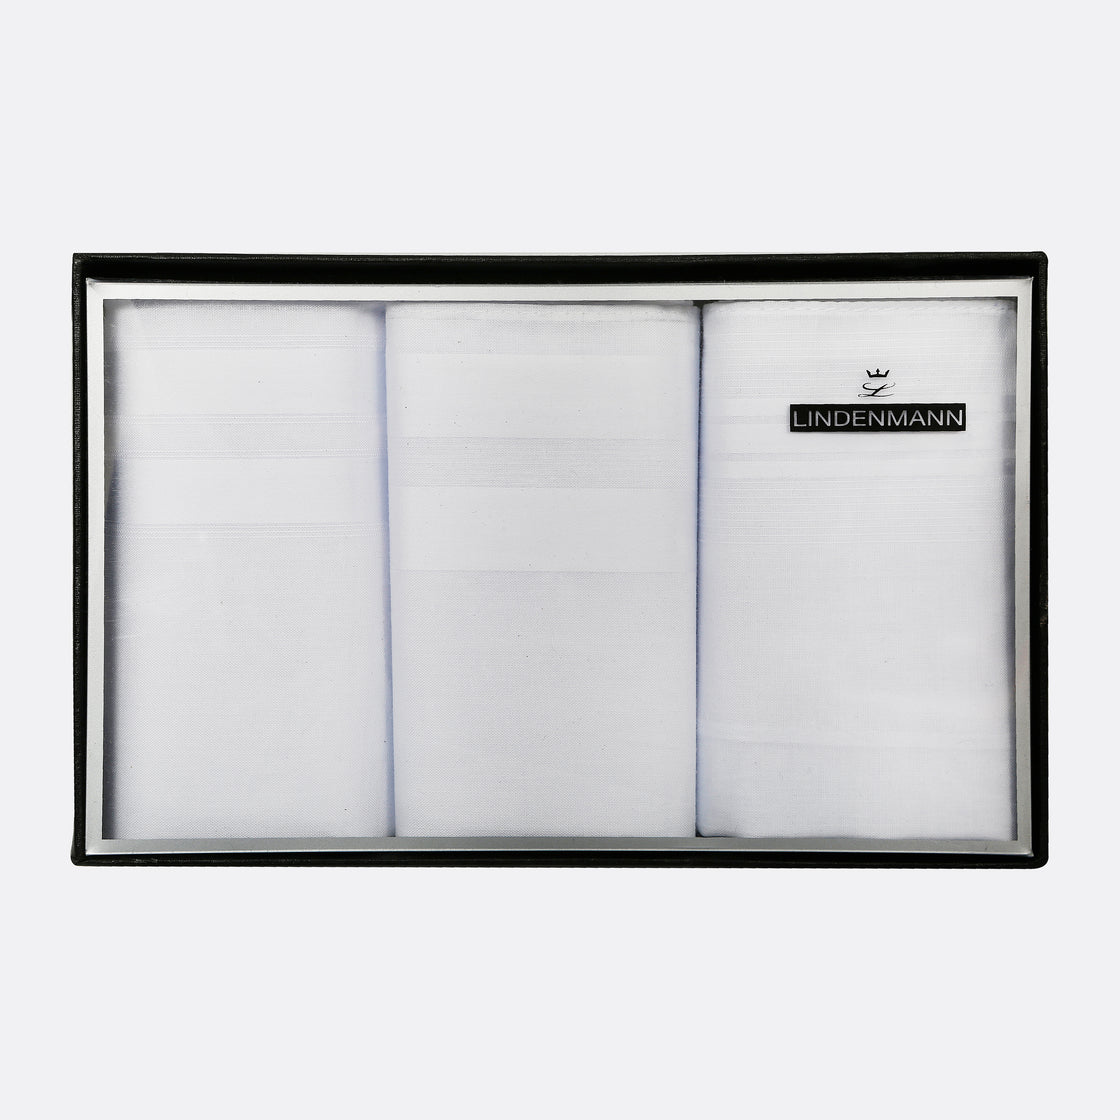 Lindenmann White Cotton Handkerchiefs - Set of 3